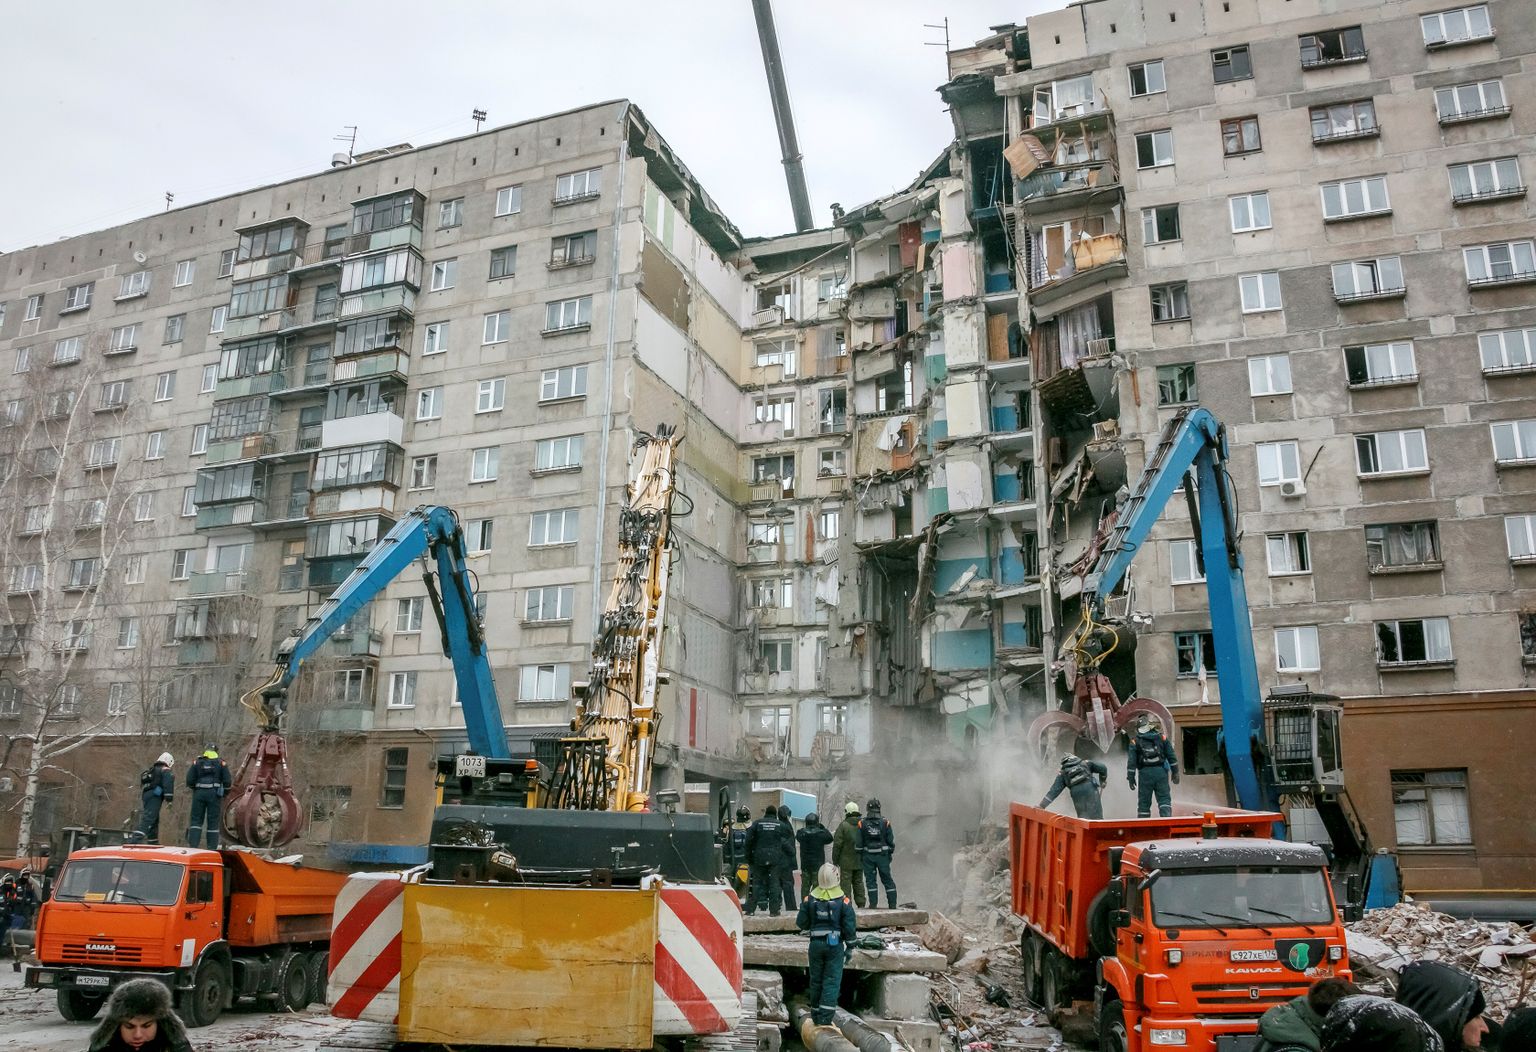 31 декабря исполнится год со дня взрыва и последующего обрушения многоквартирного дома на улице Карла Маркса, 164 в Магнитогорске.